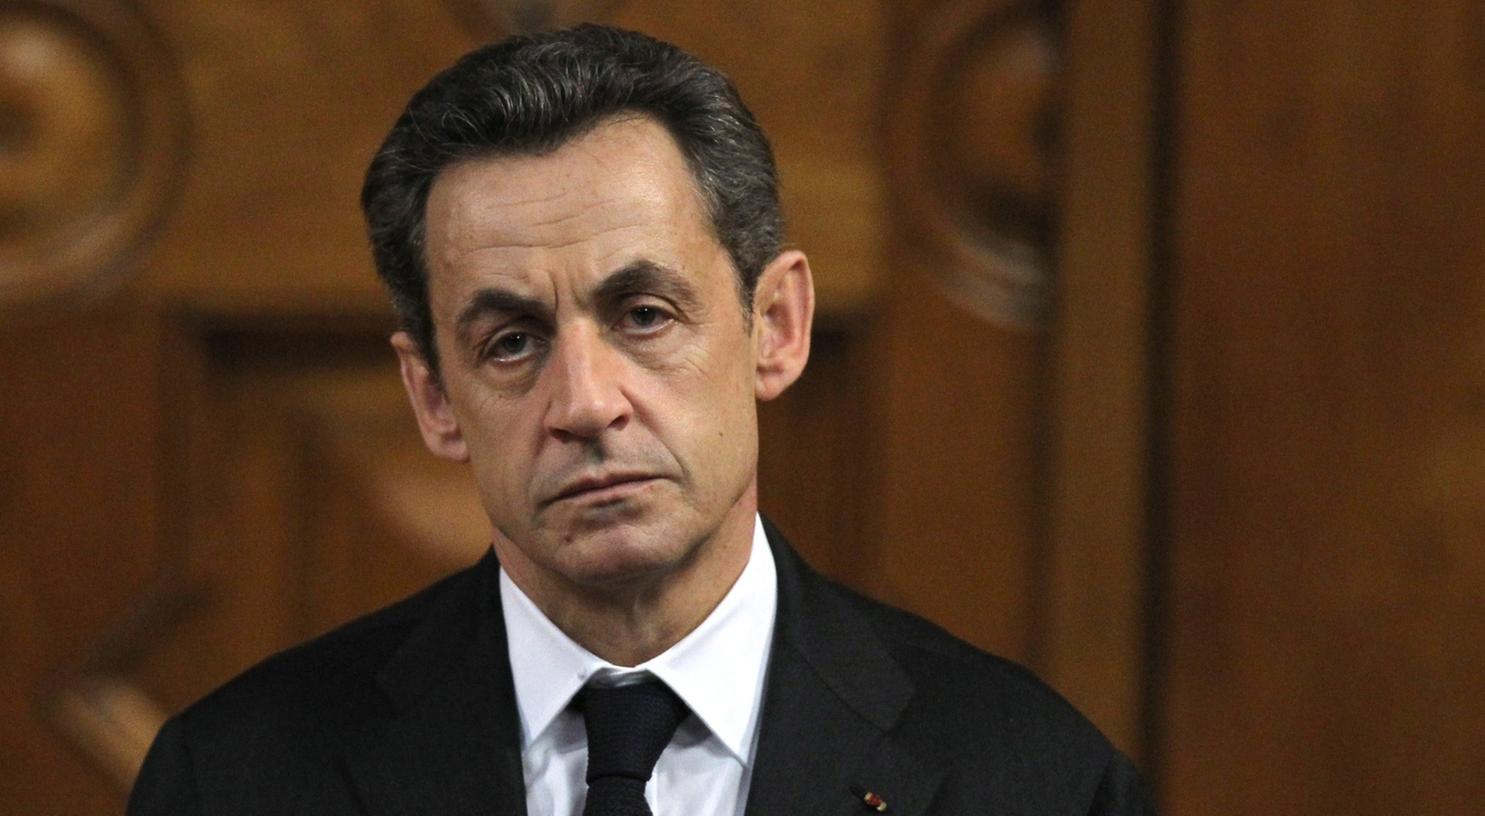 Die Staatsanwaltschaft hat gegen den früheren Staatspräsidenten Nicolas Sarkozy ein Verfahren eröffnet.